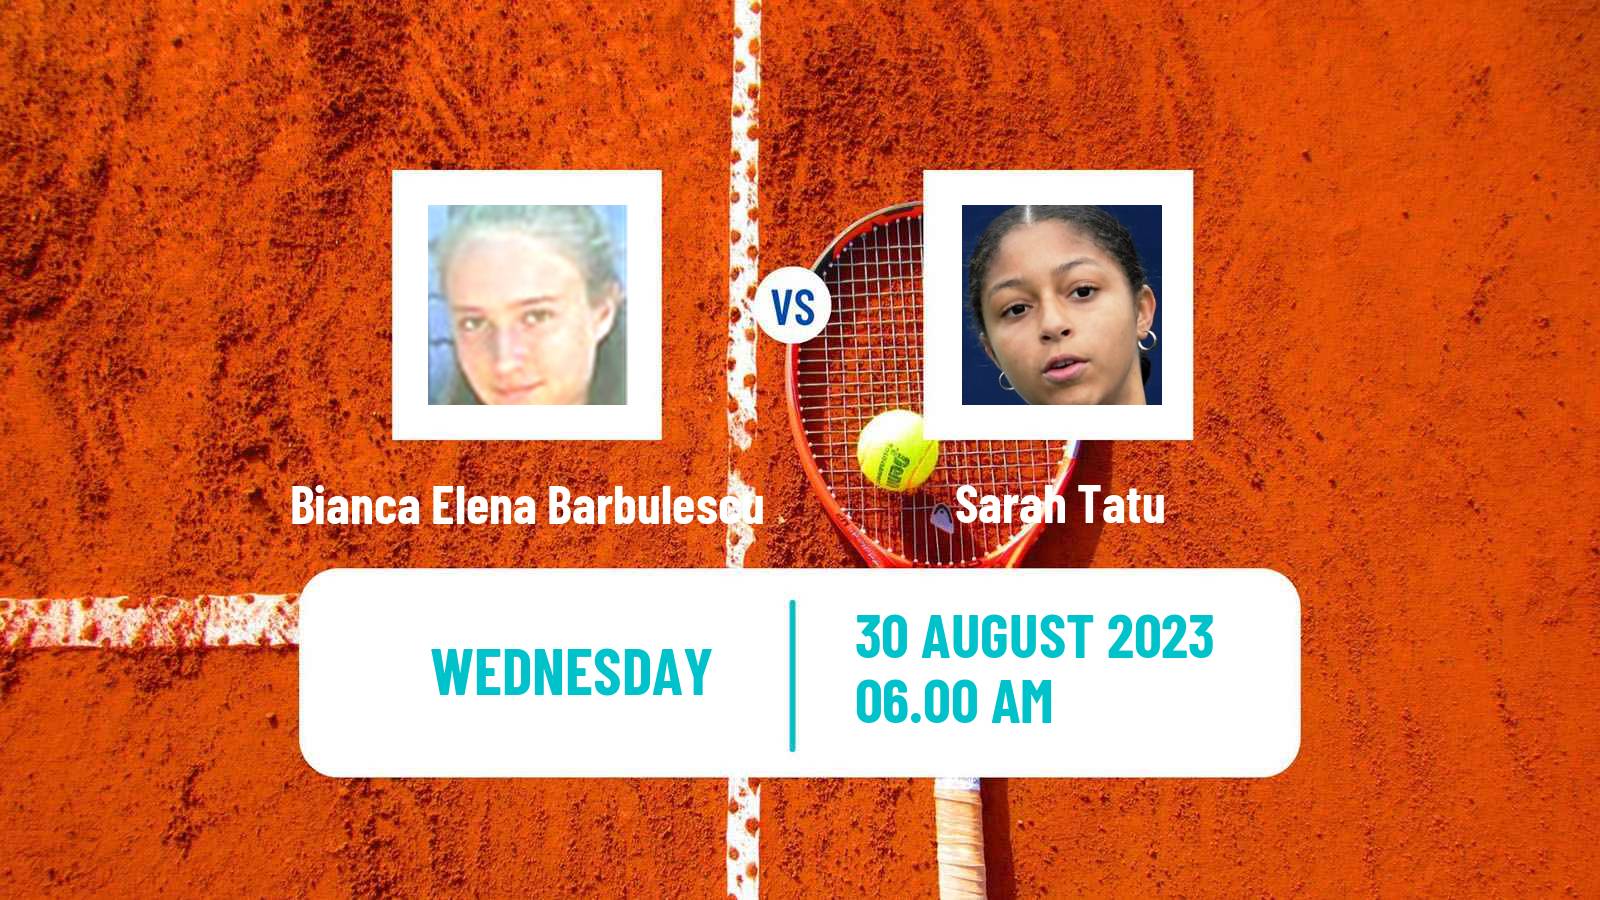 Tennis ITF W15 Brasov 2 Women Bianca Elena Barbulescu - Sarah Tatu